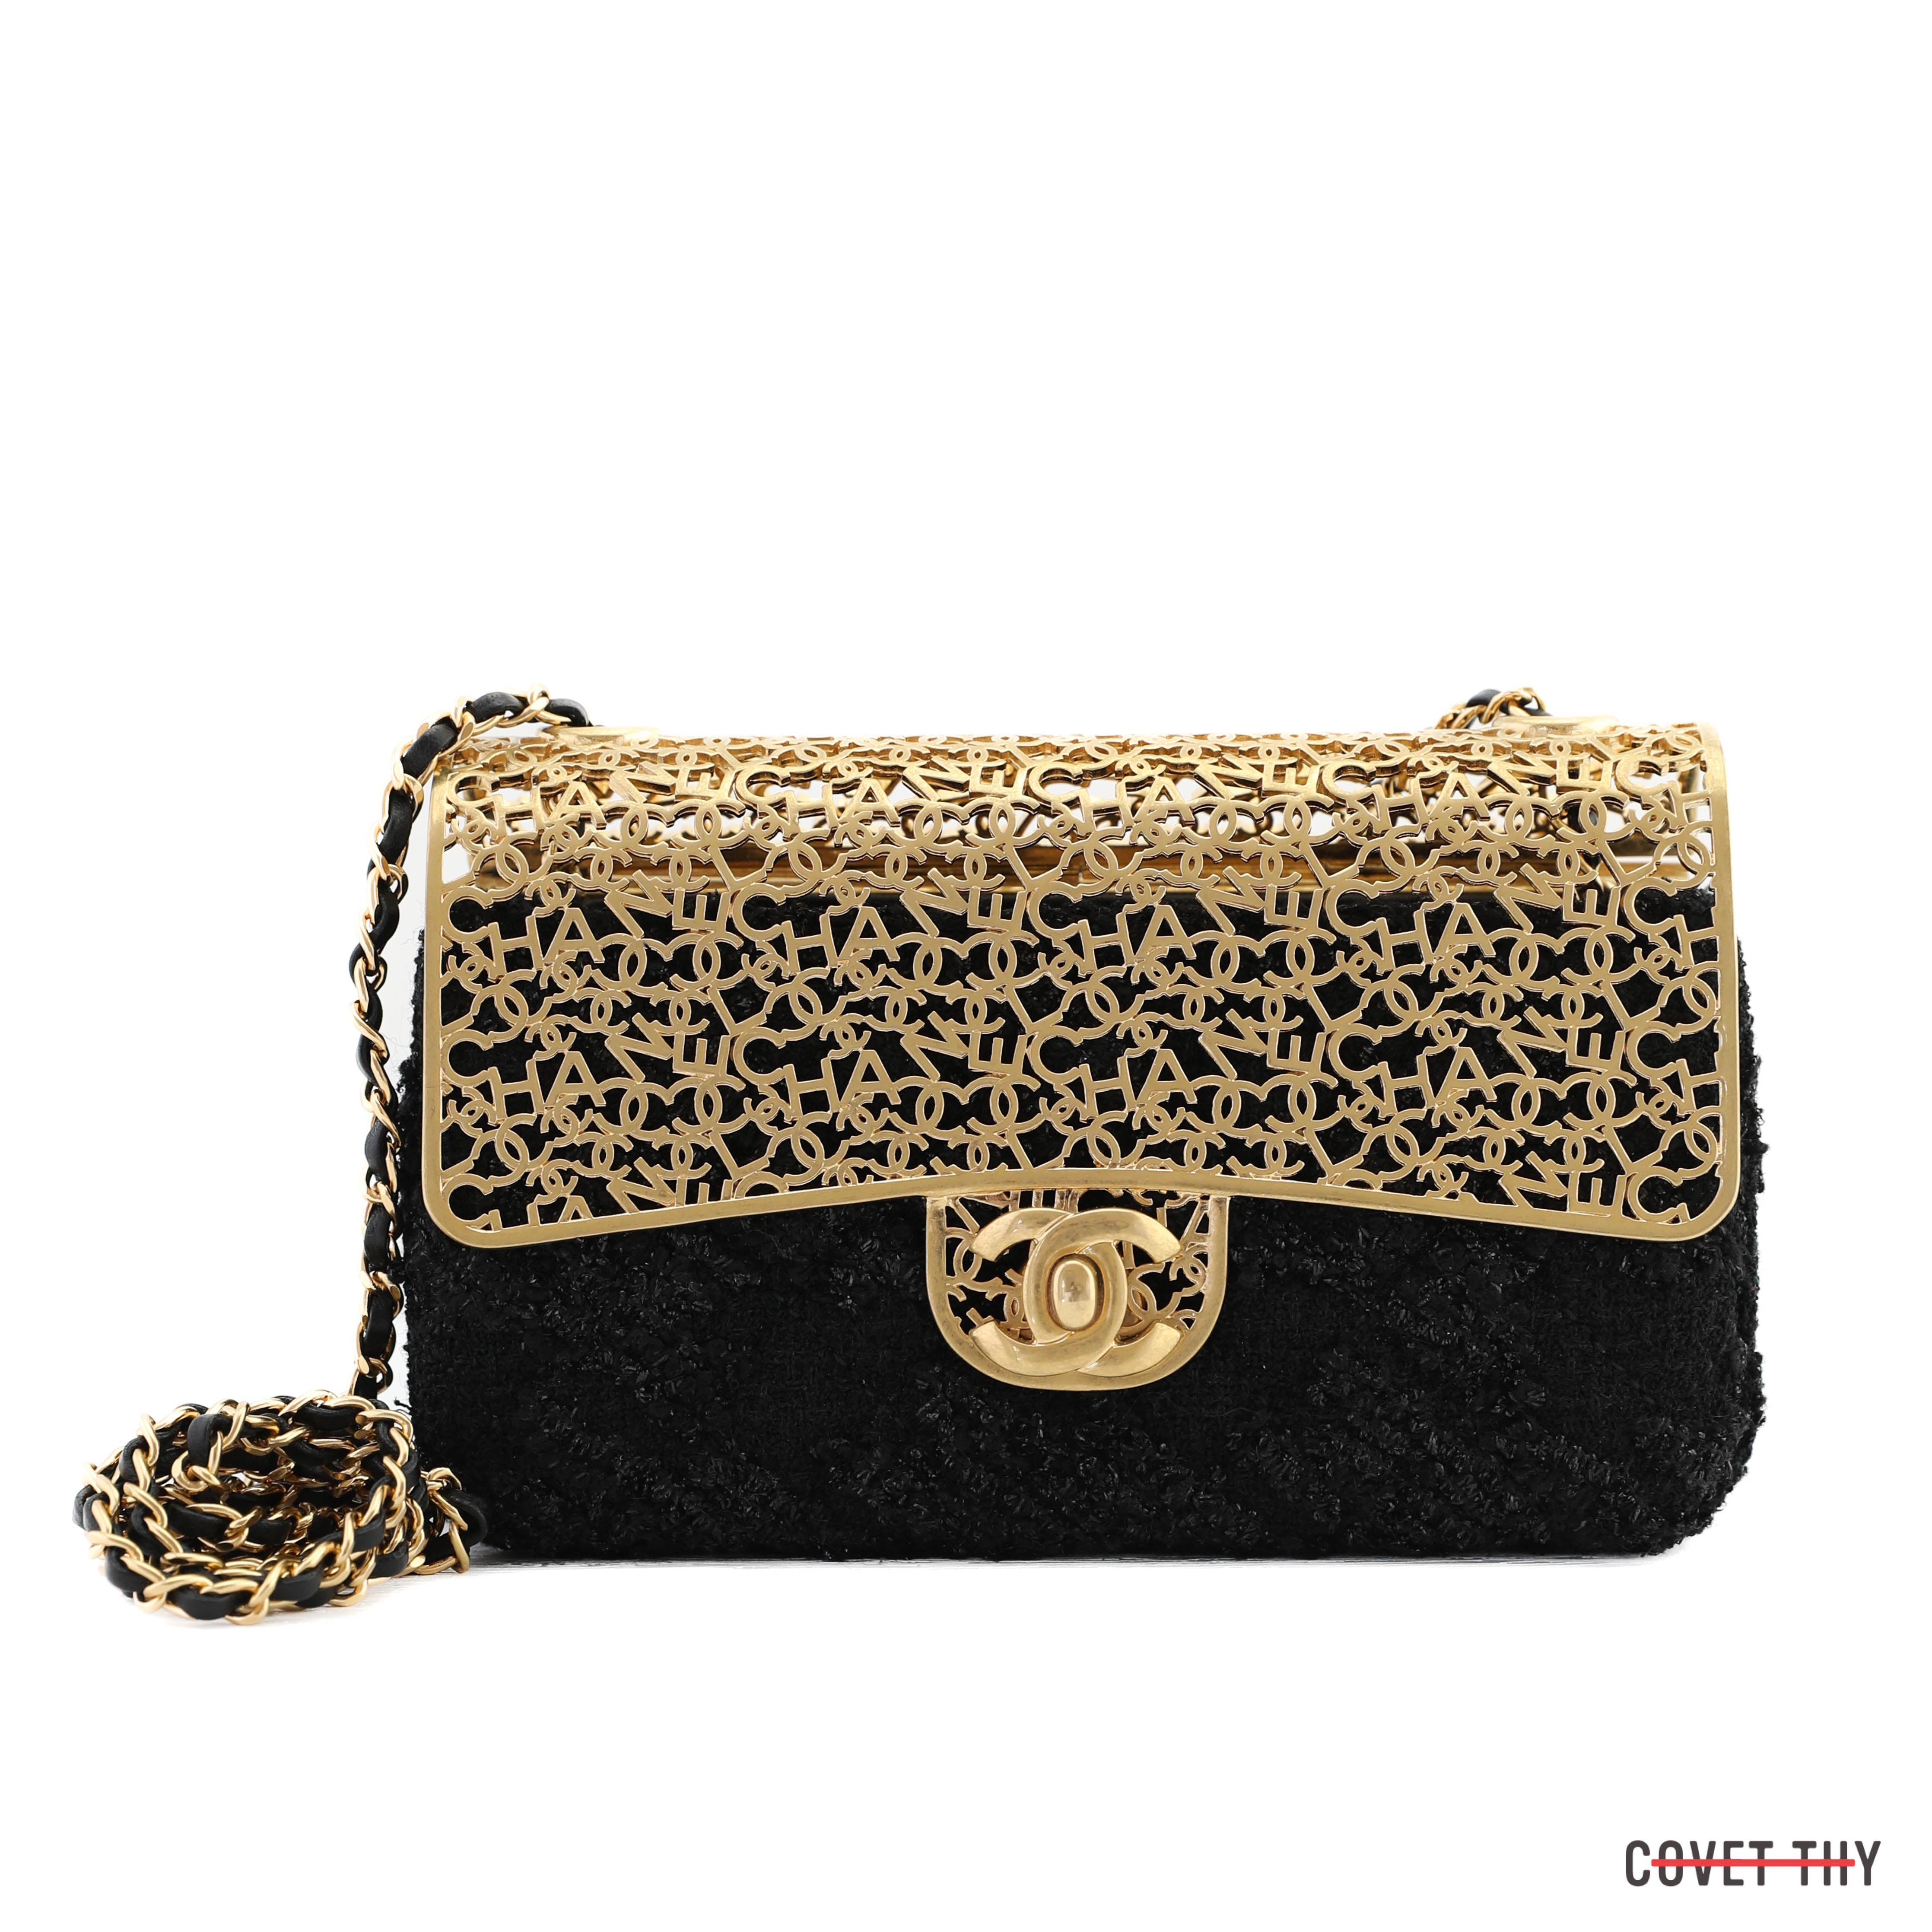 Joliegazette Masterclass / Subject: Chanel 2.55 clutch — GAZETTE DU BON TON